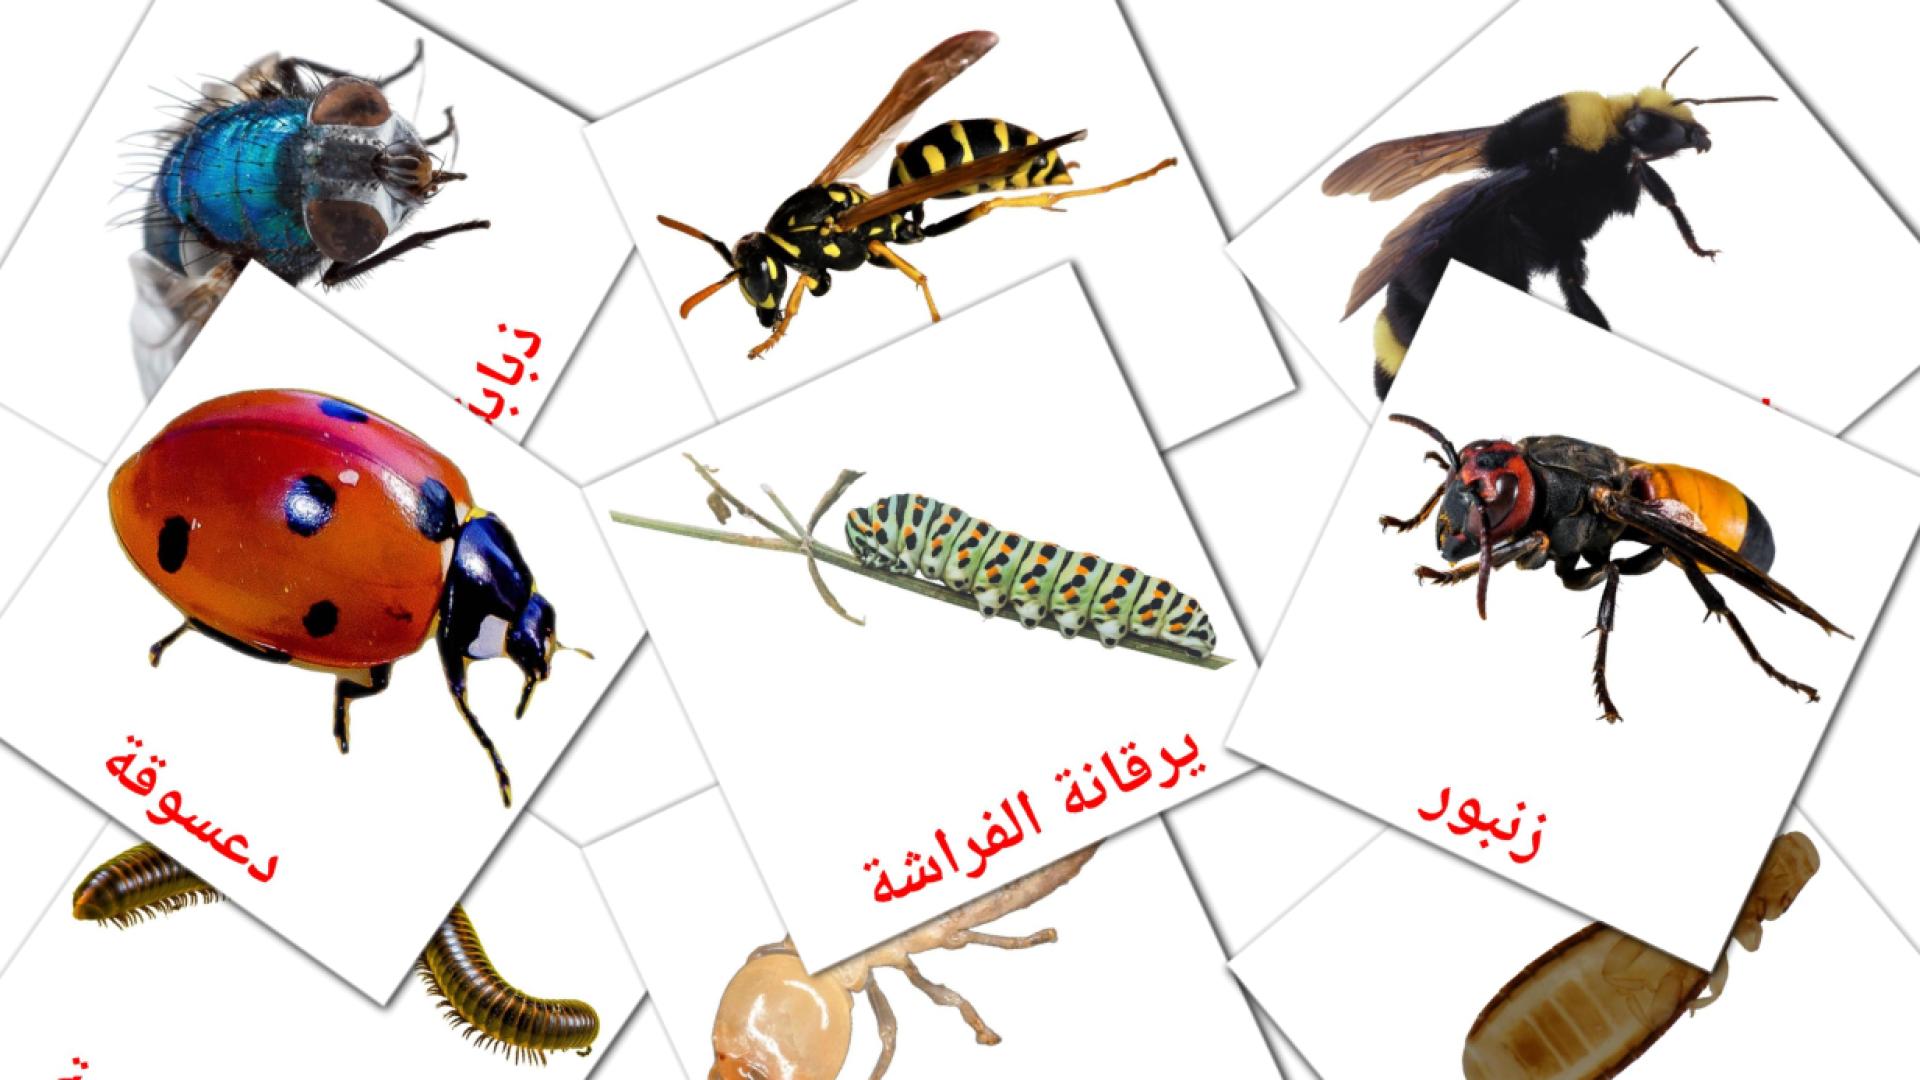 Insekt - Arabisch Vokabelkarten